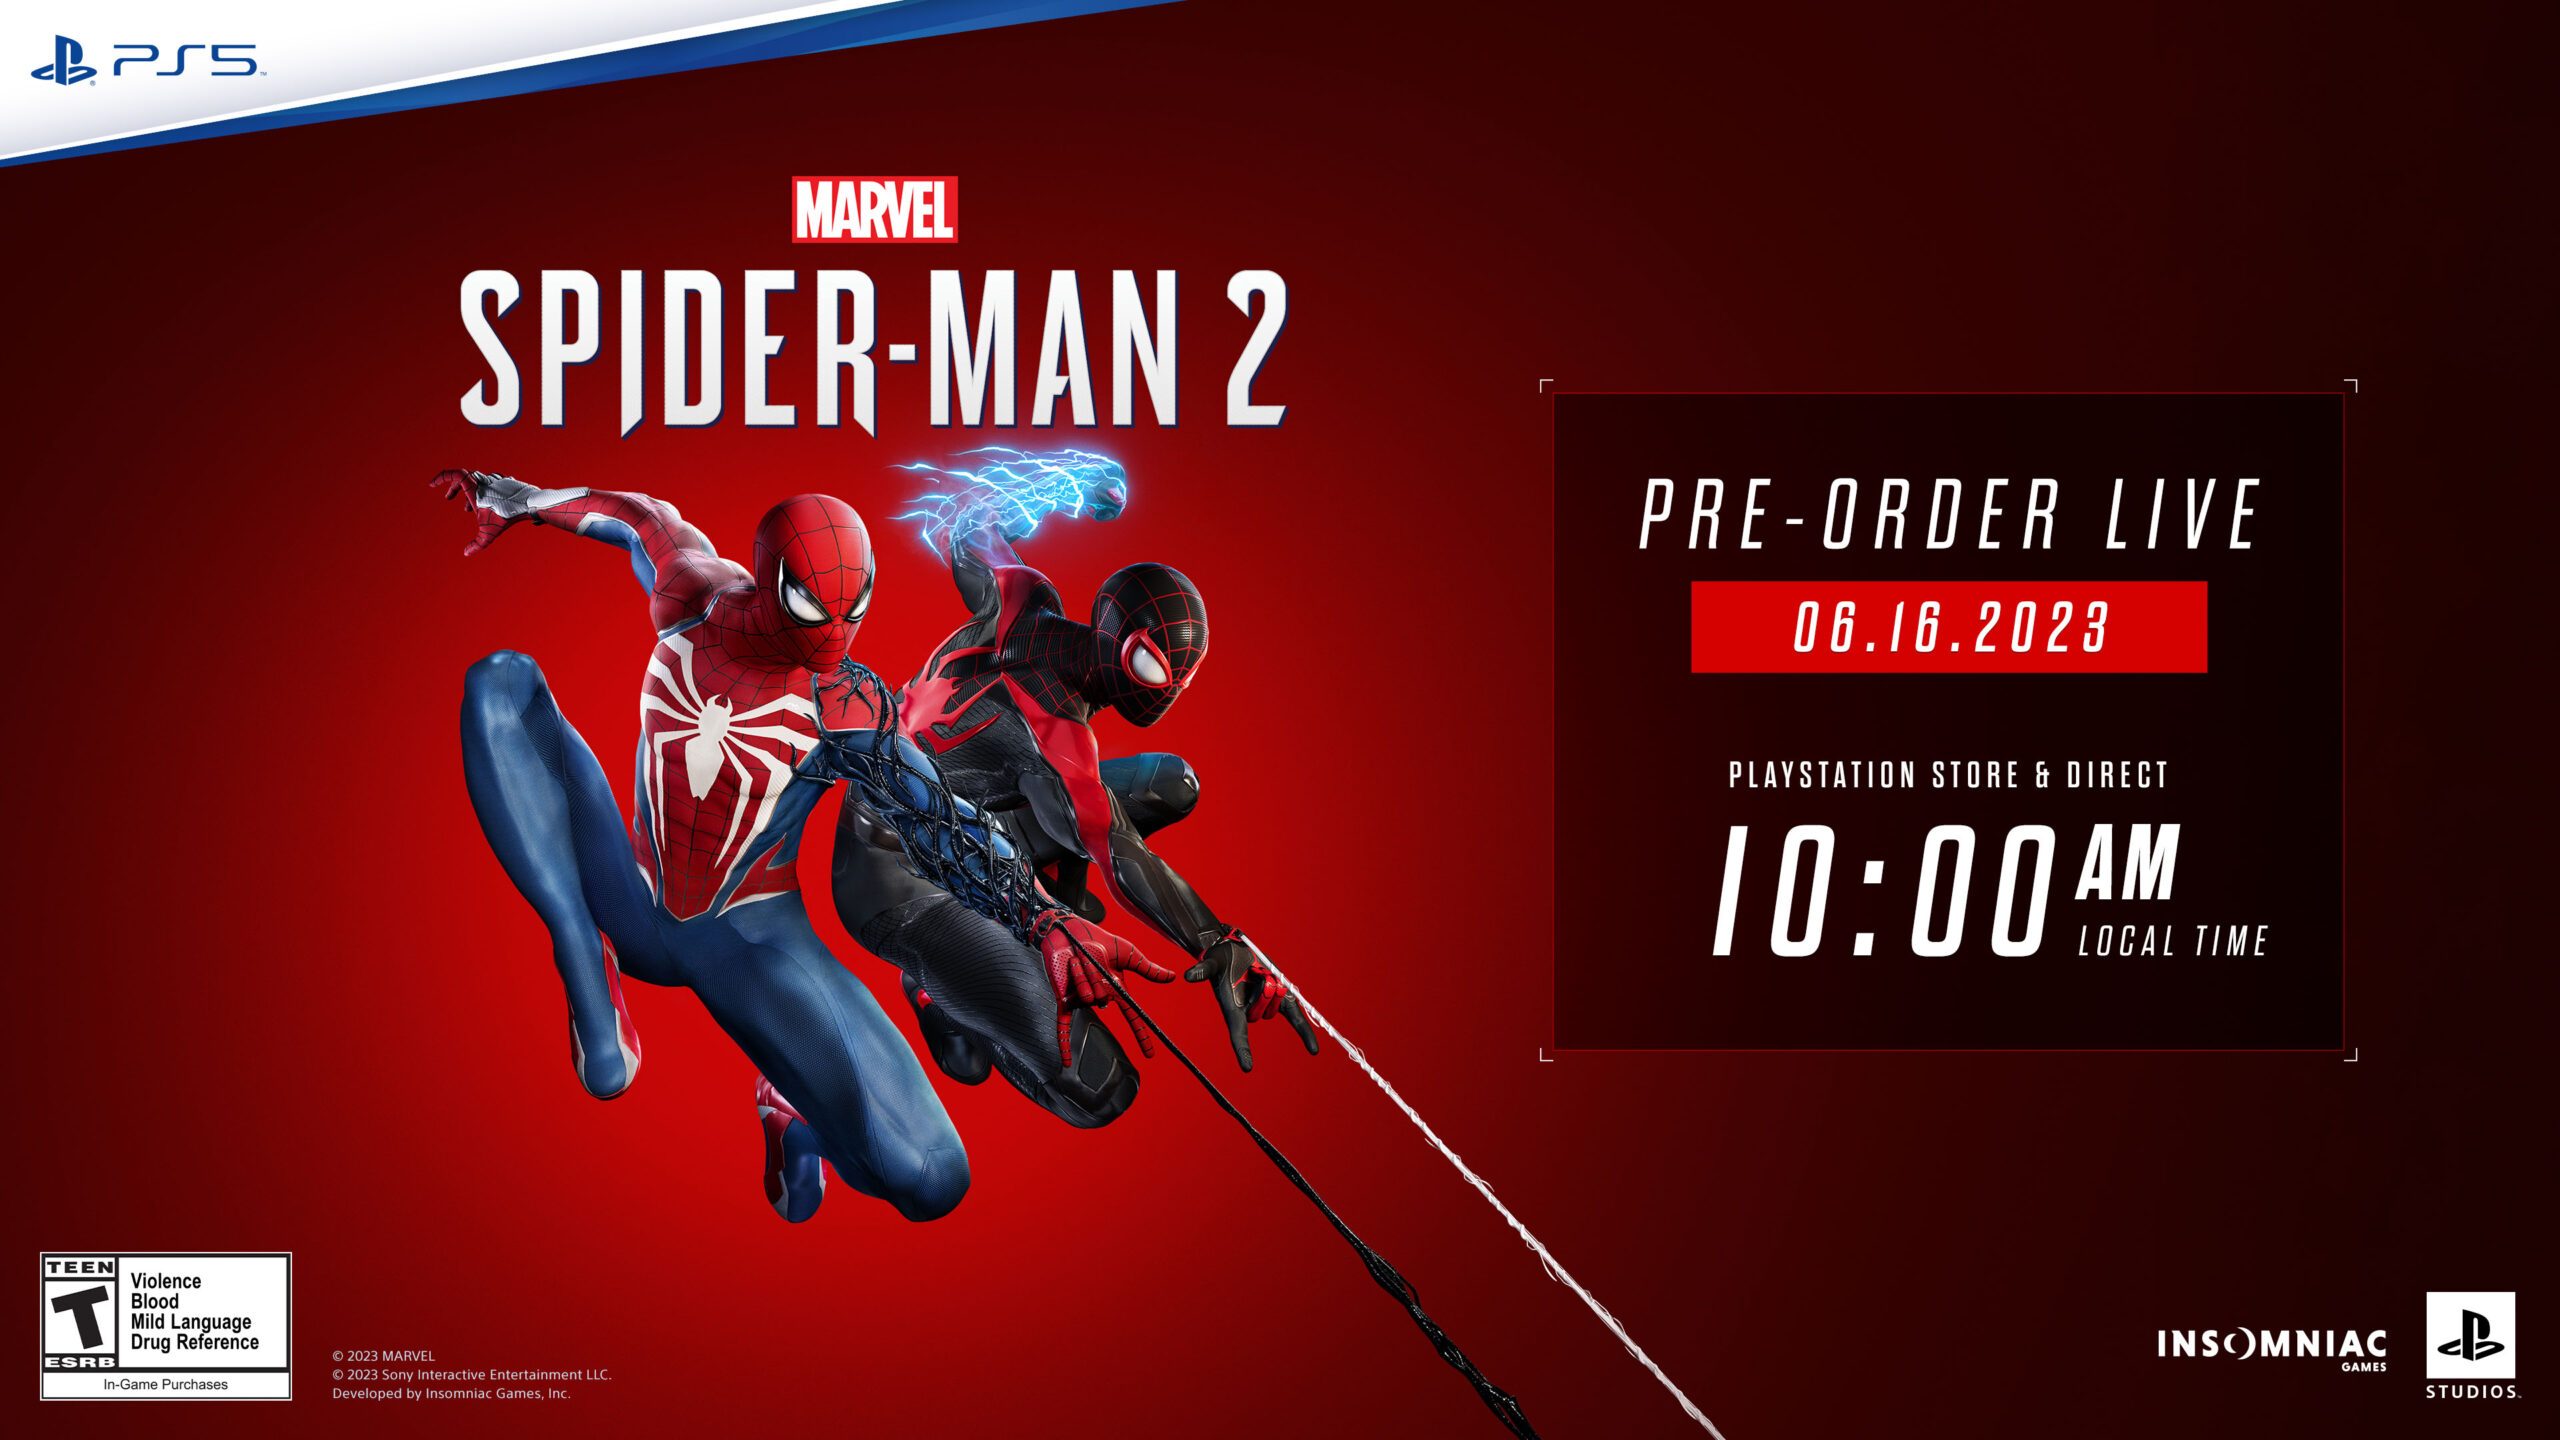 Los especuladores han vuelto, y ahora quieren aprovecharse del interés por  Spider-Man 2 con precios muy elevados en el mando y la carcasa de PS5 -  Marvel's Spider-Man 2 - 3DJuegos